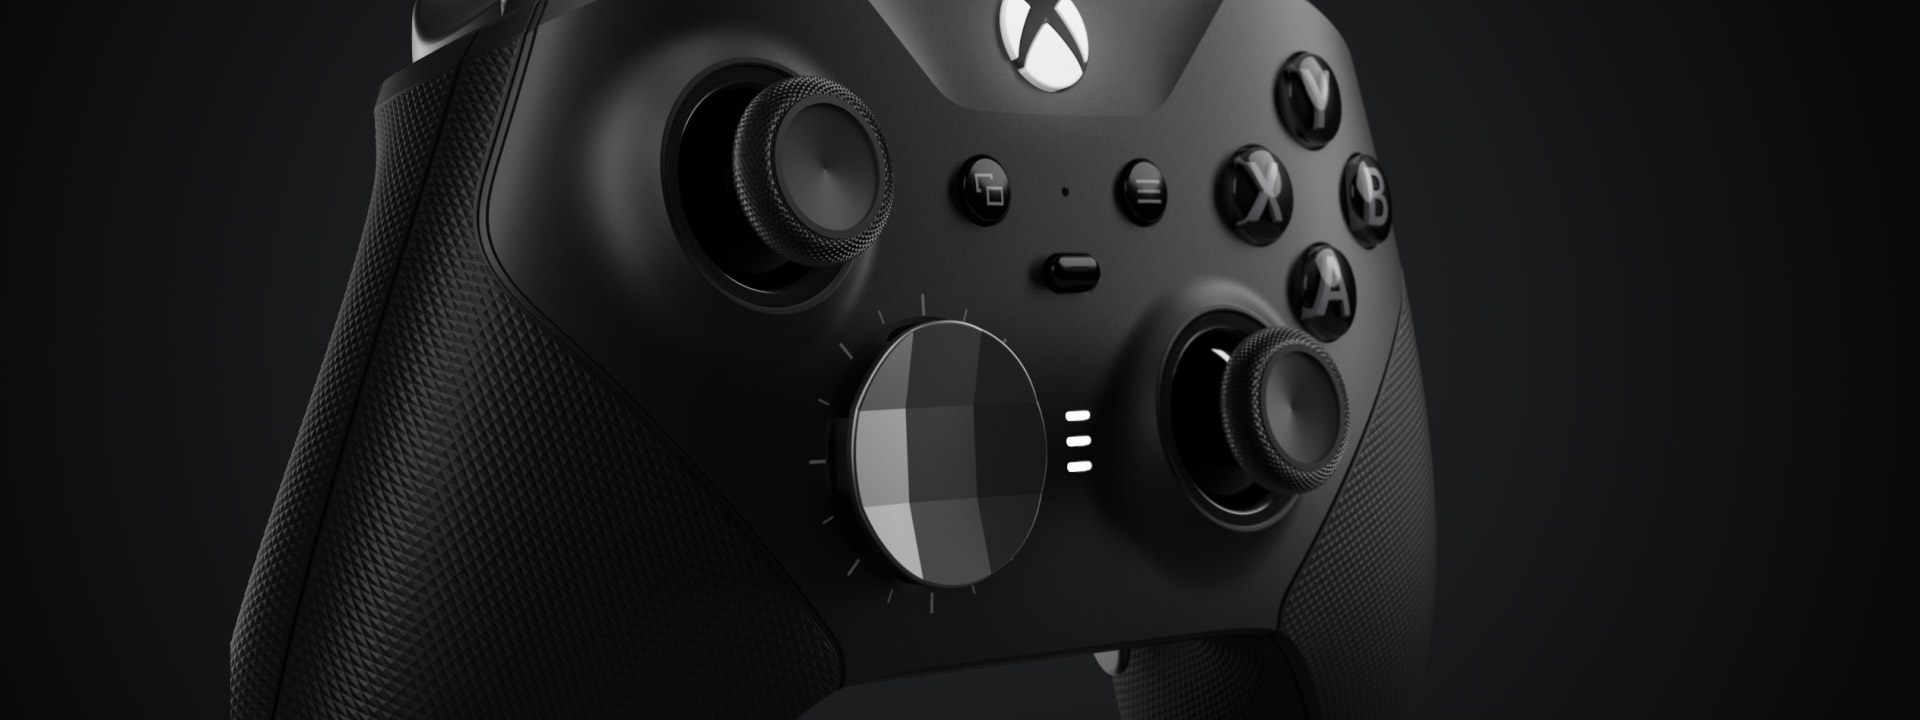 Xbox Elite Series 2 se lanza oficialmente con batería de 40 horas